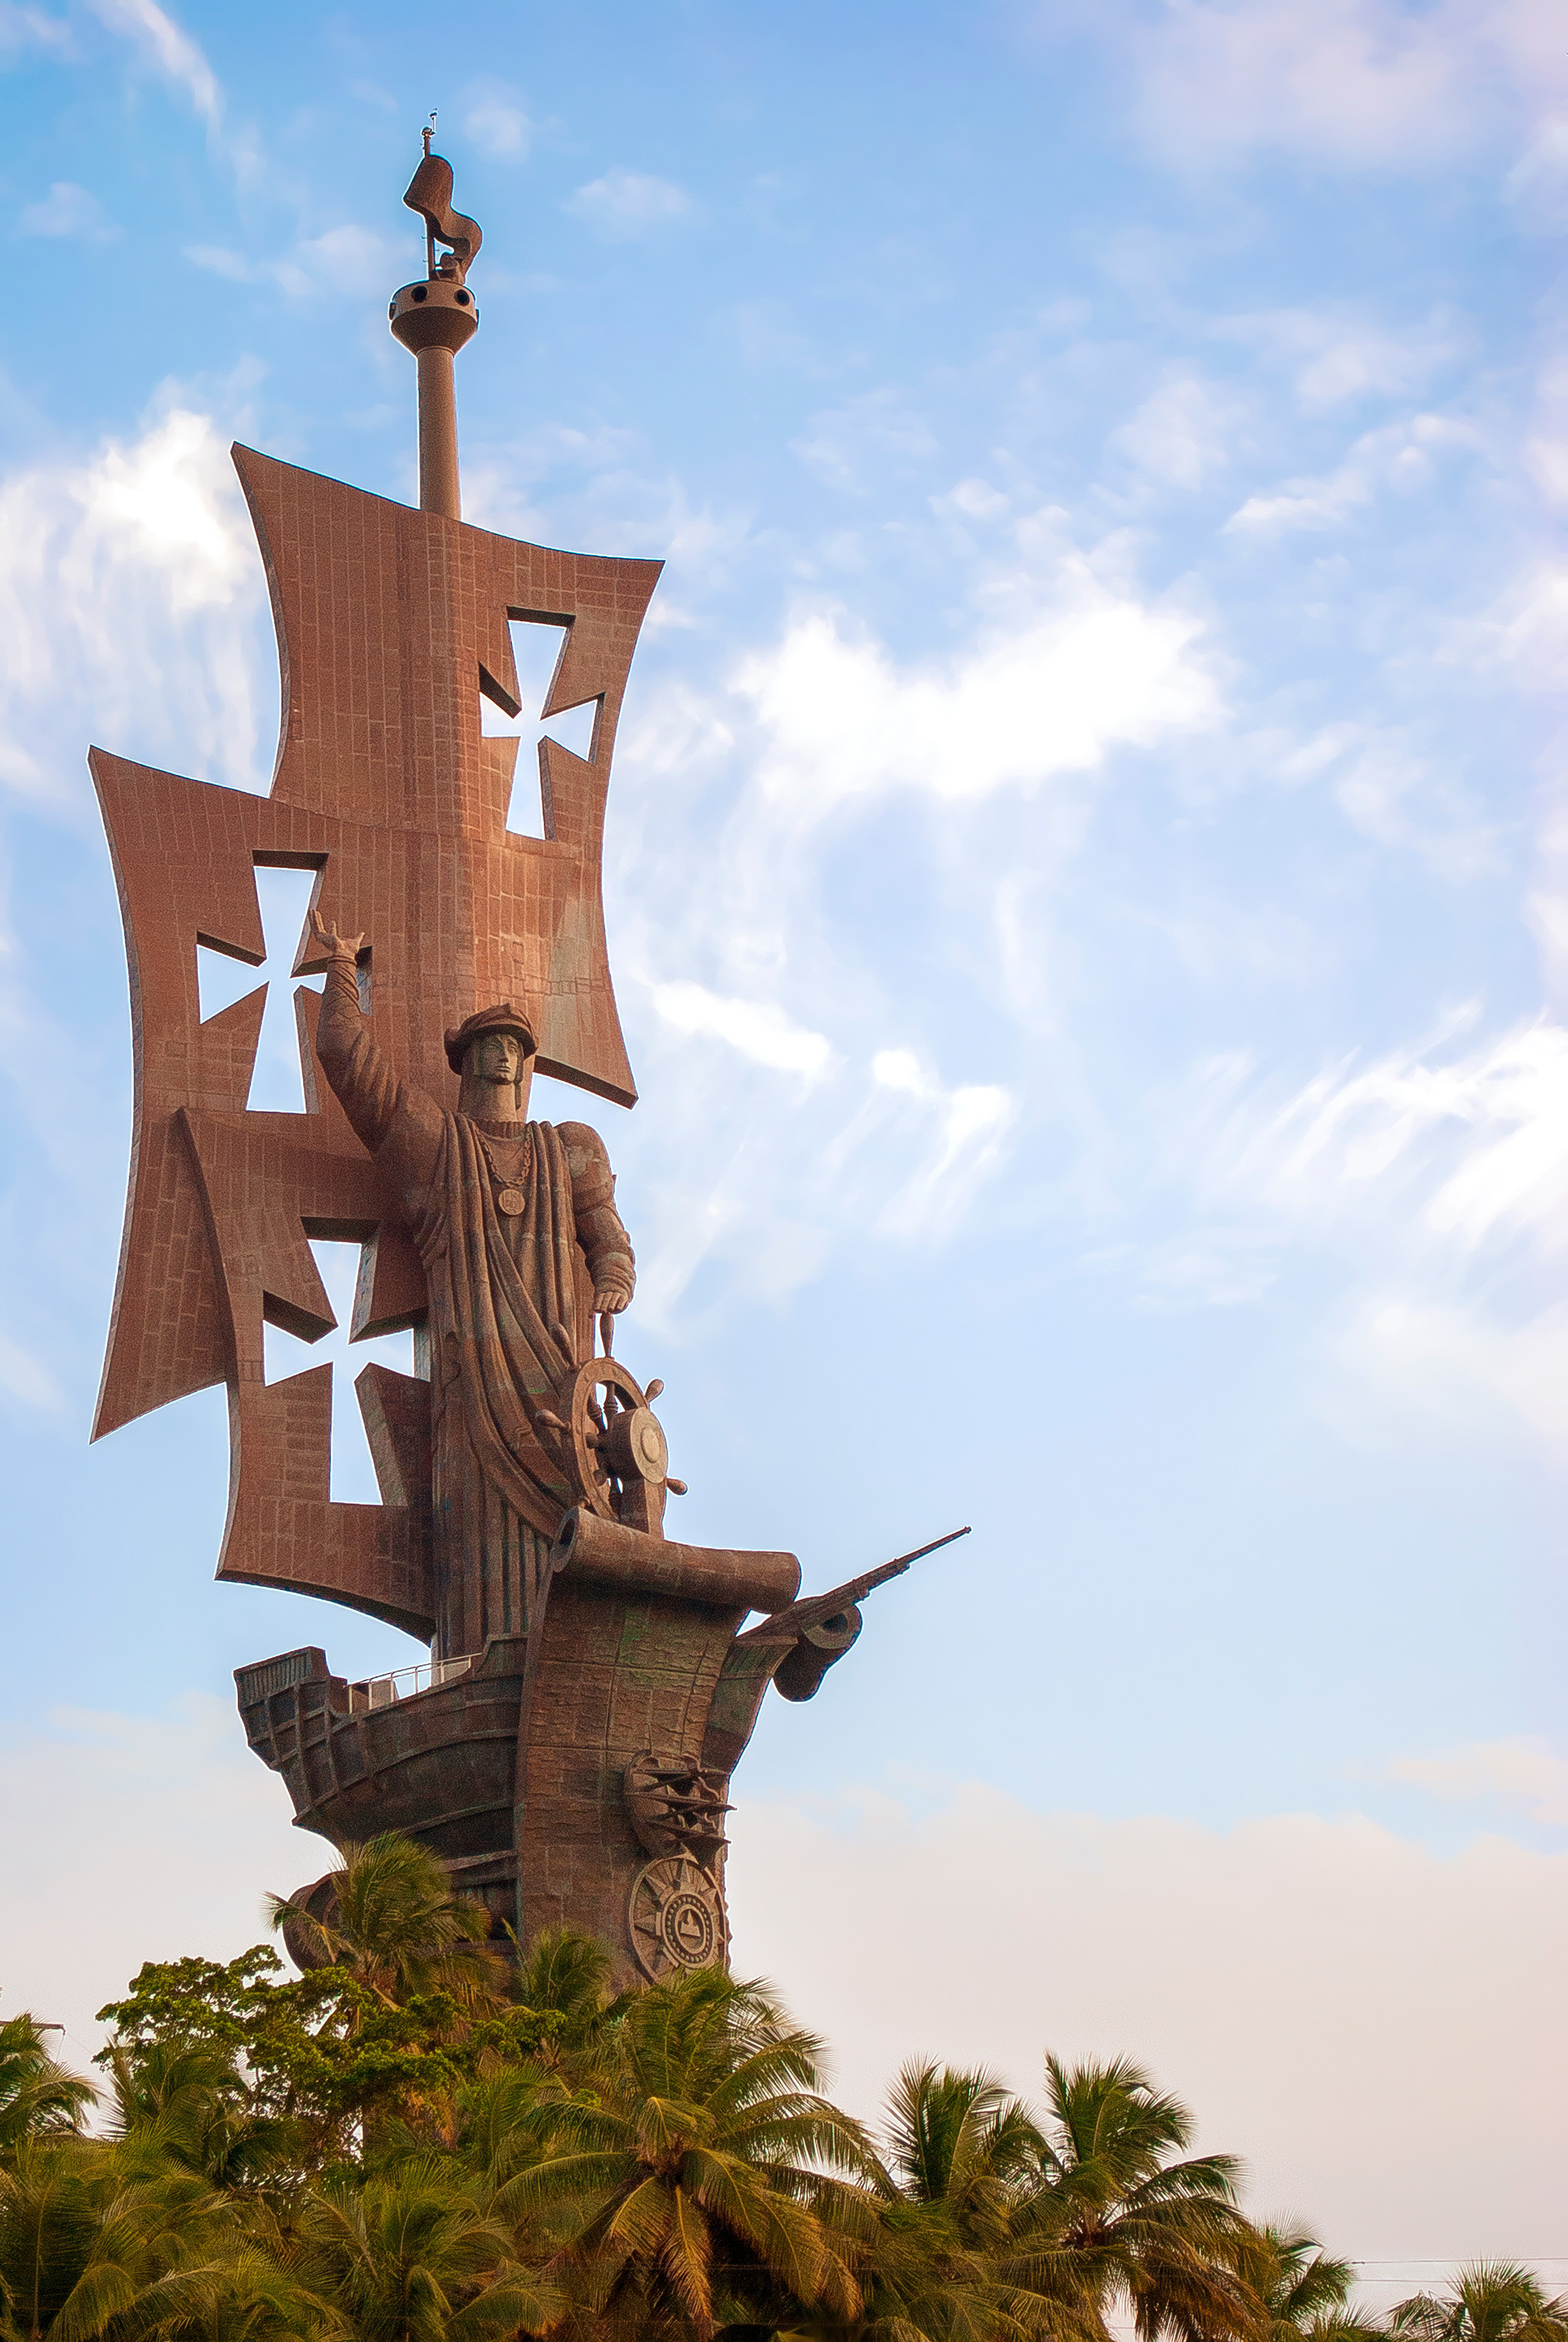 Kolumbusstatue in Puerto Rico